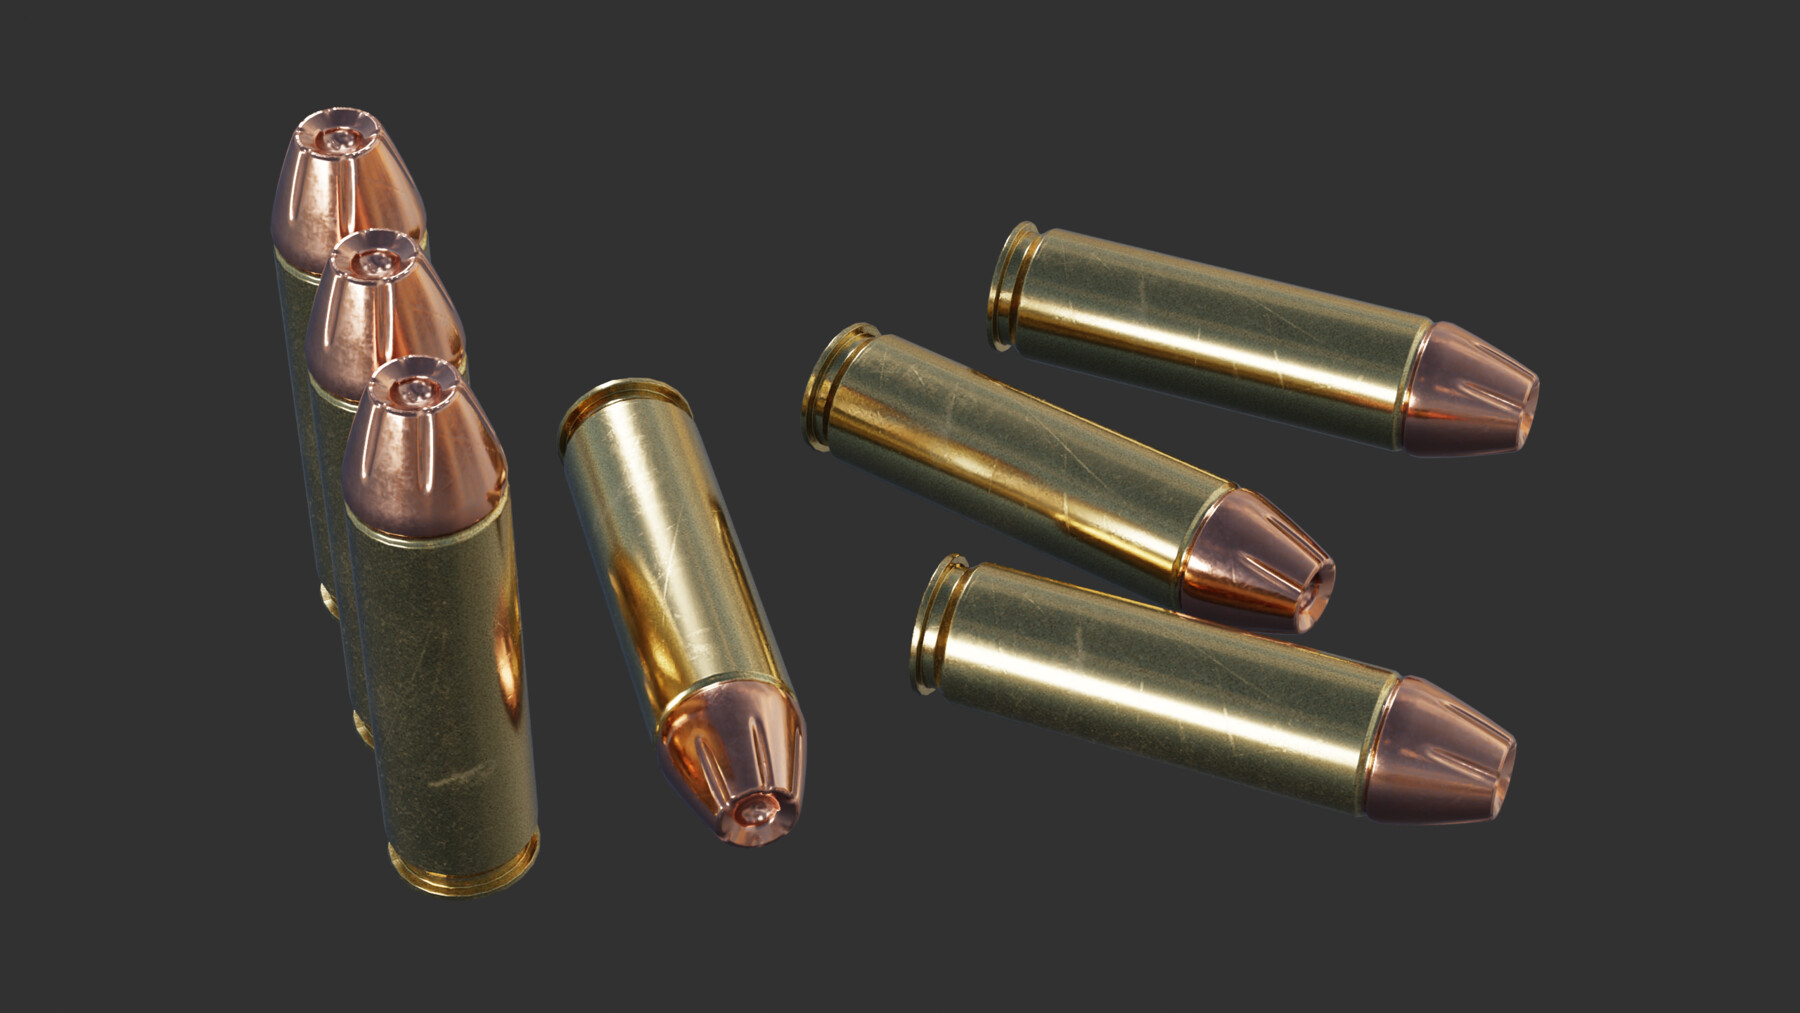 desert eagle bullet vs 9mm